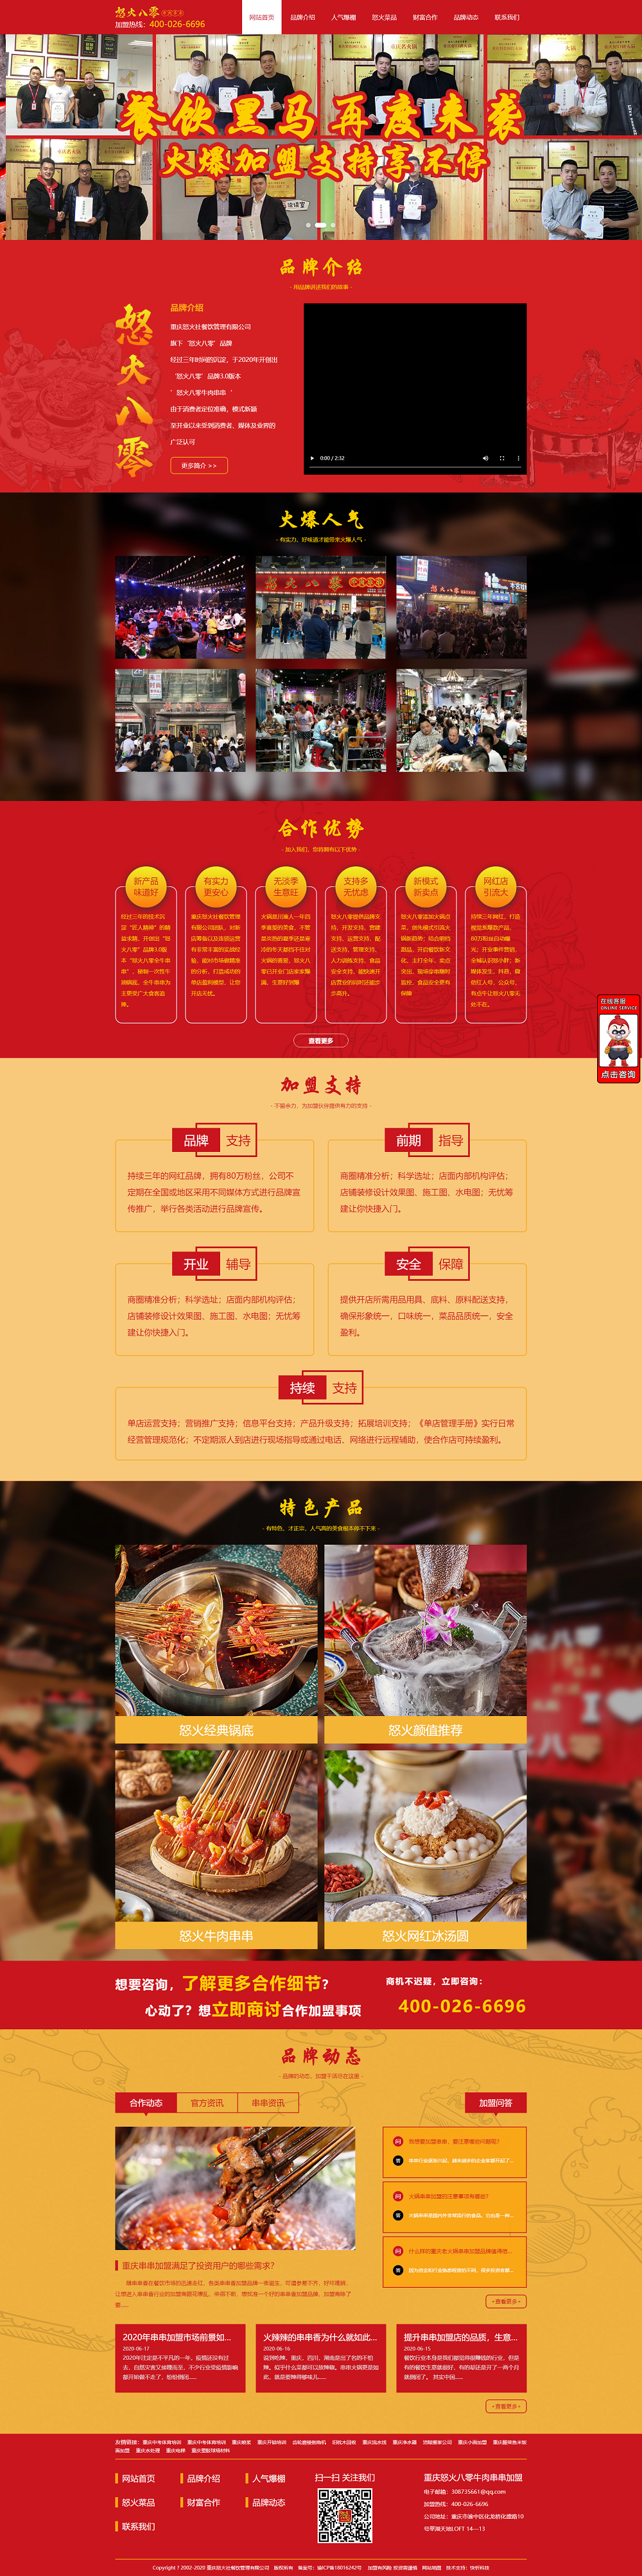 重庆怒火社餐饮管理有限公司网站建设案例